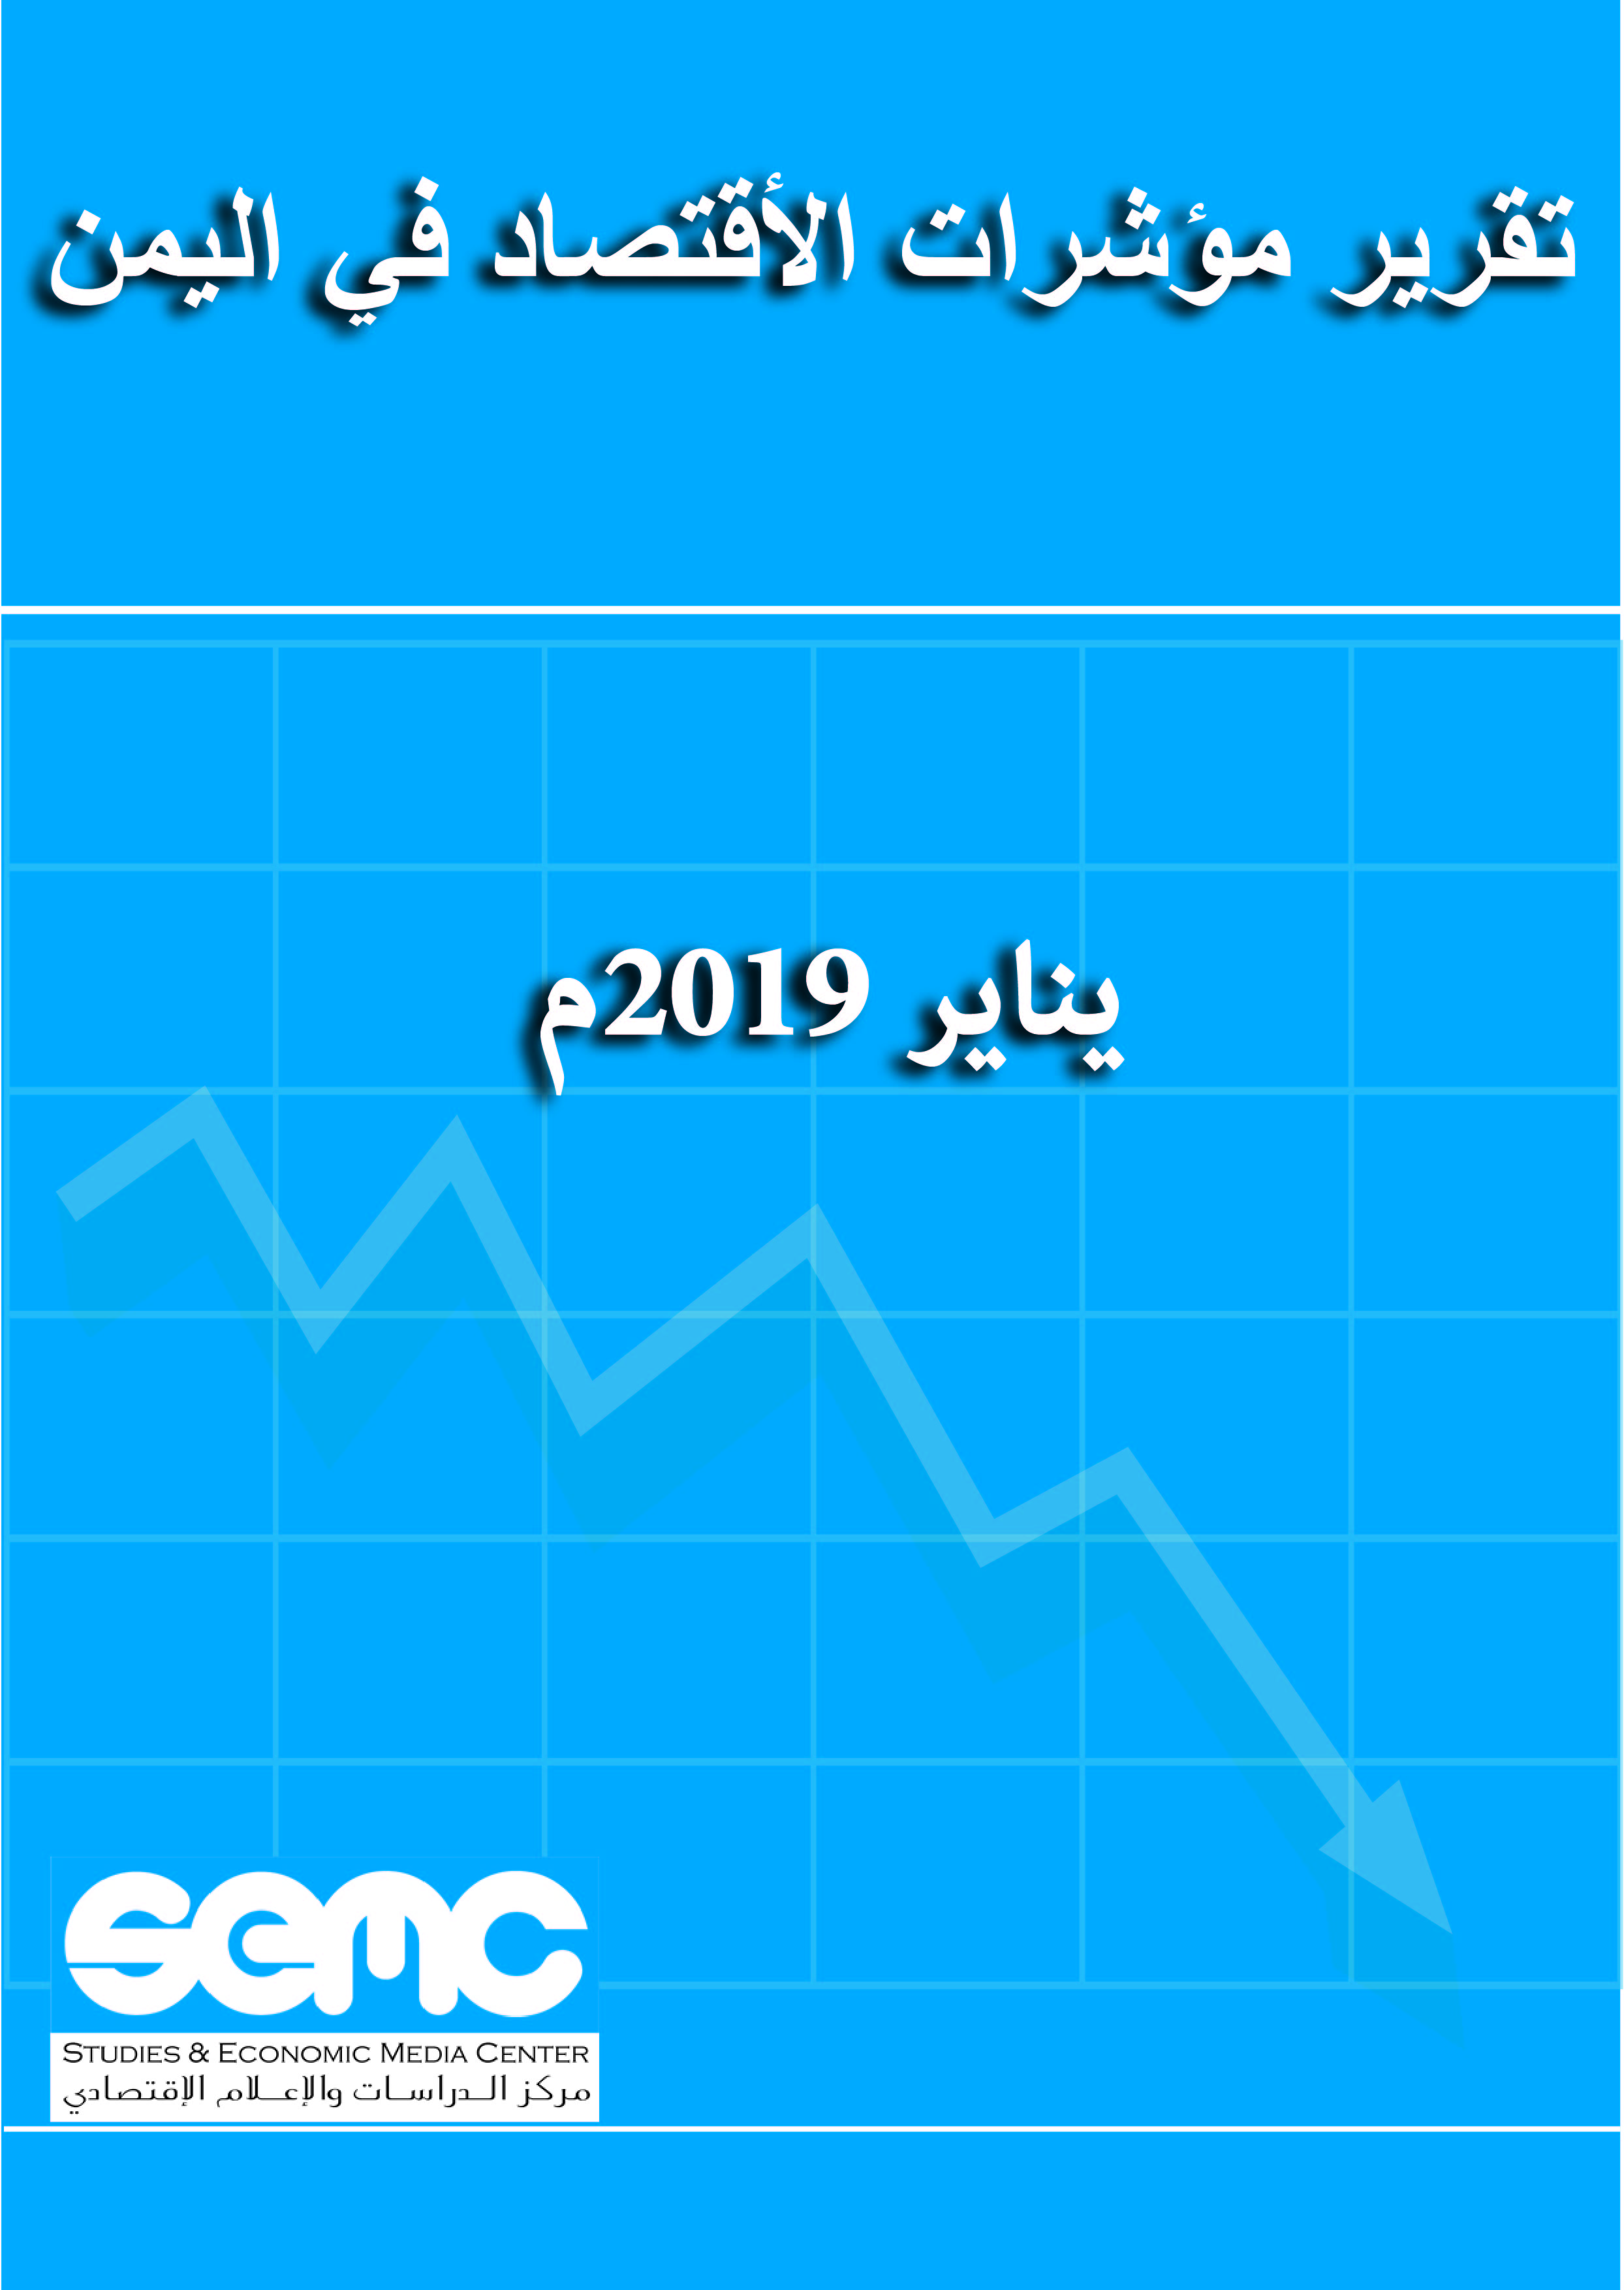 تقرير مؤشرات الاقتصاد اليمني يناير 2019م